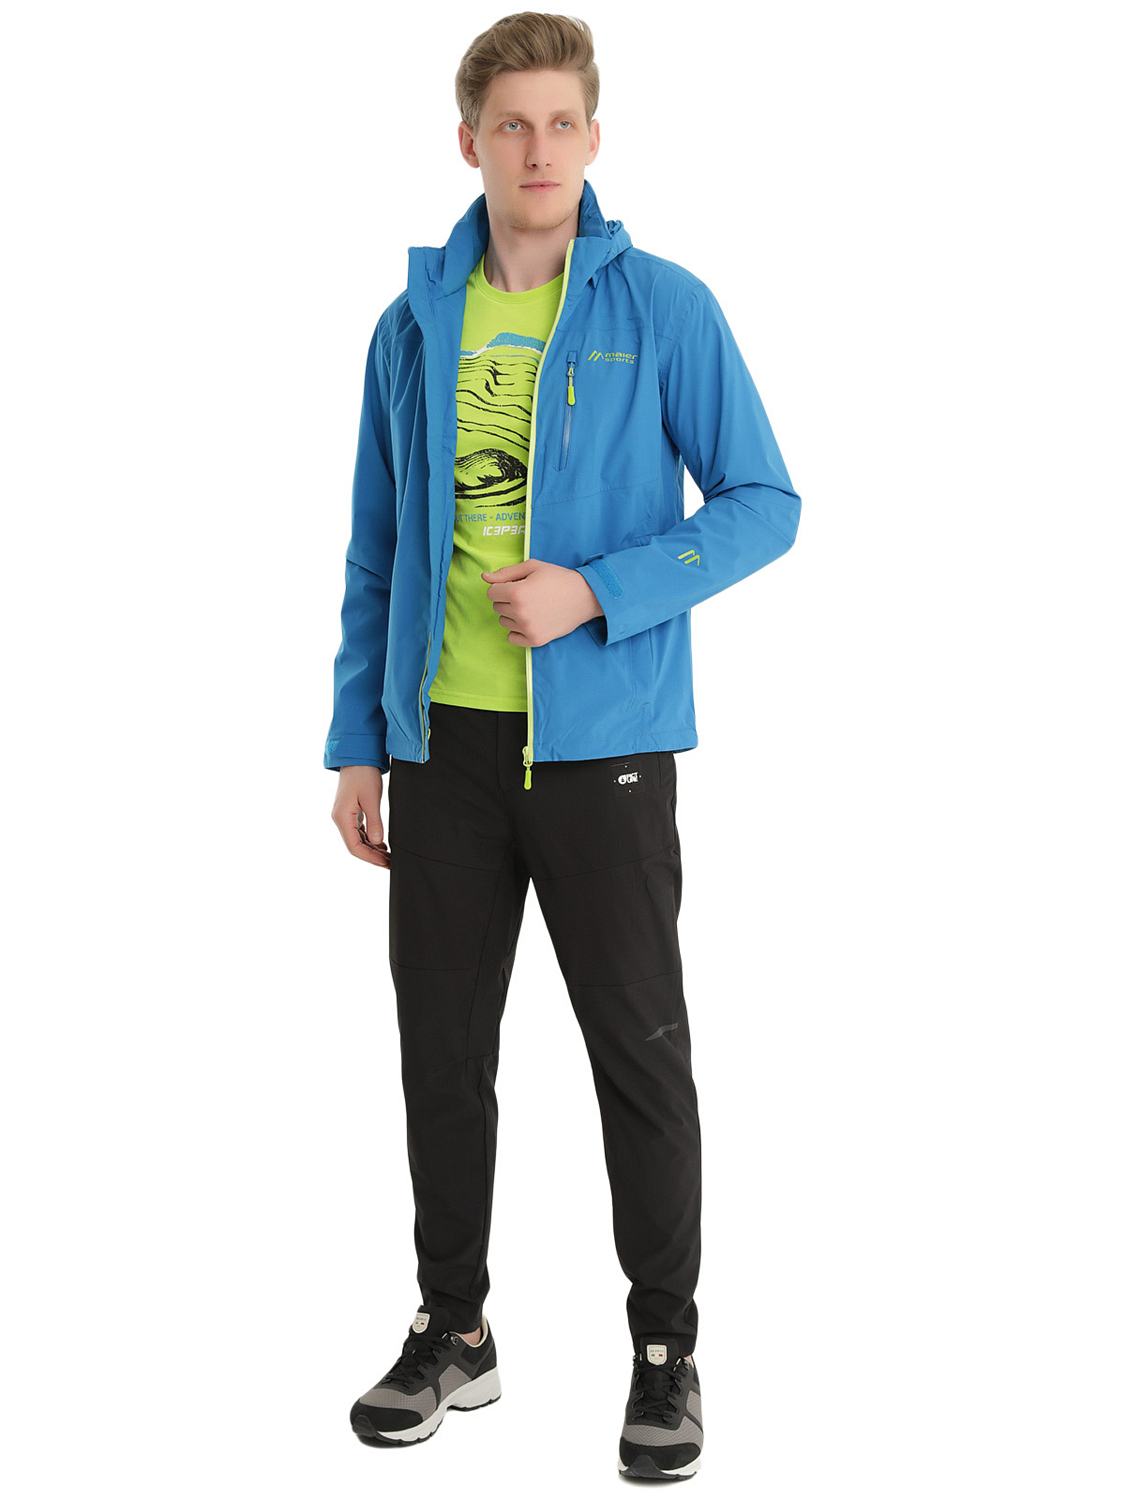 Куртка для активного отдыха Maier Sports 2020 Zonda M Imperial Blue